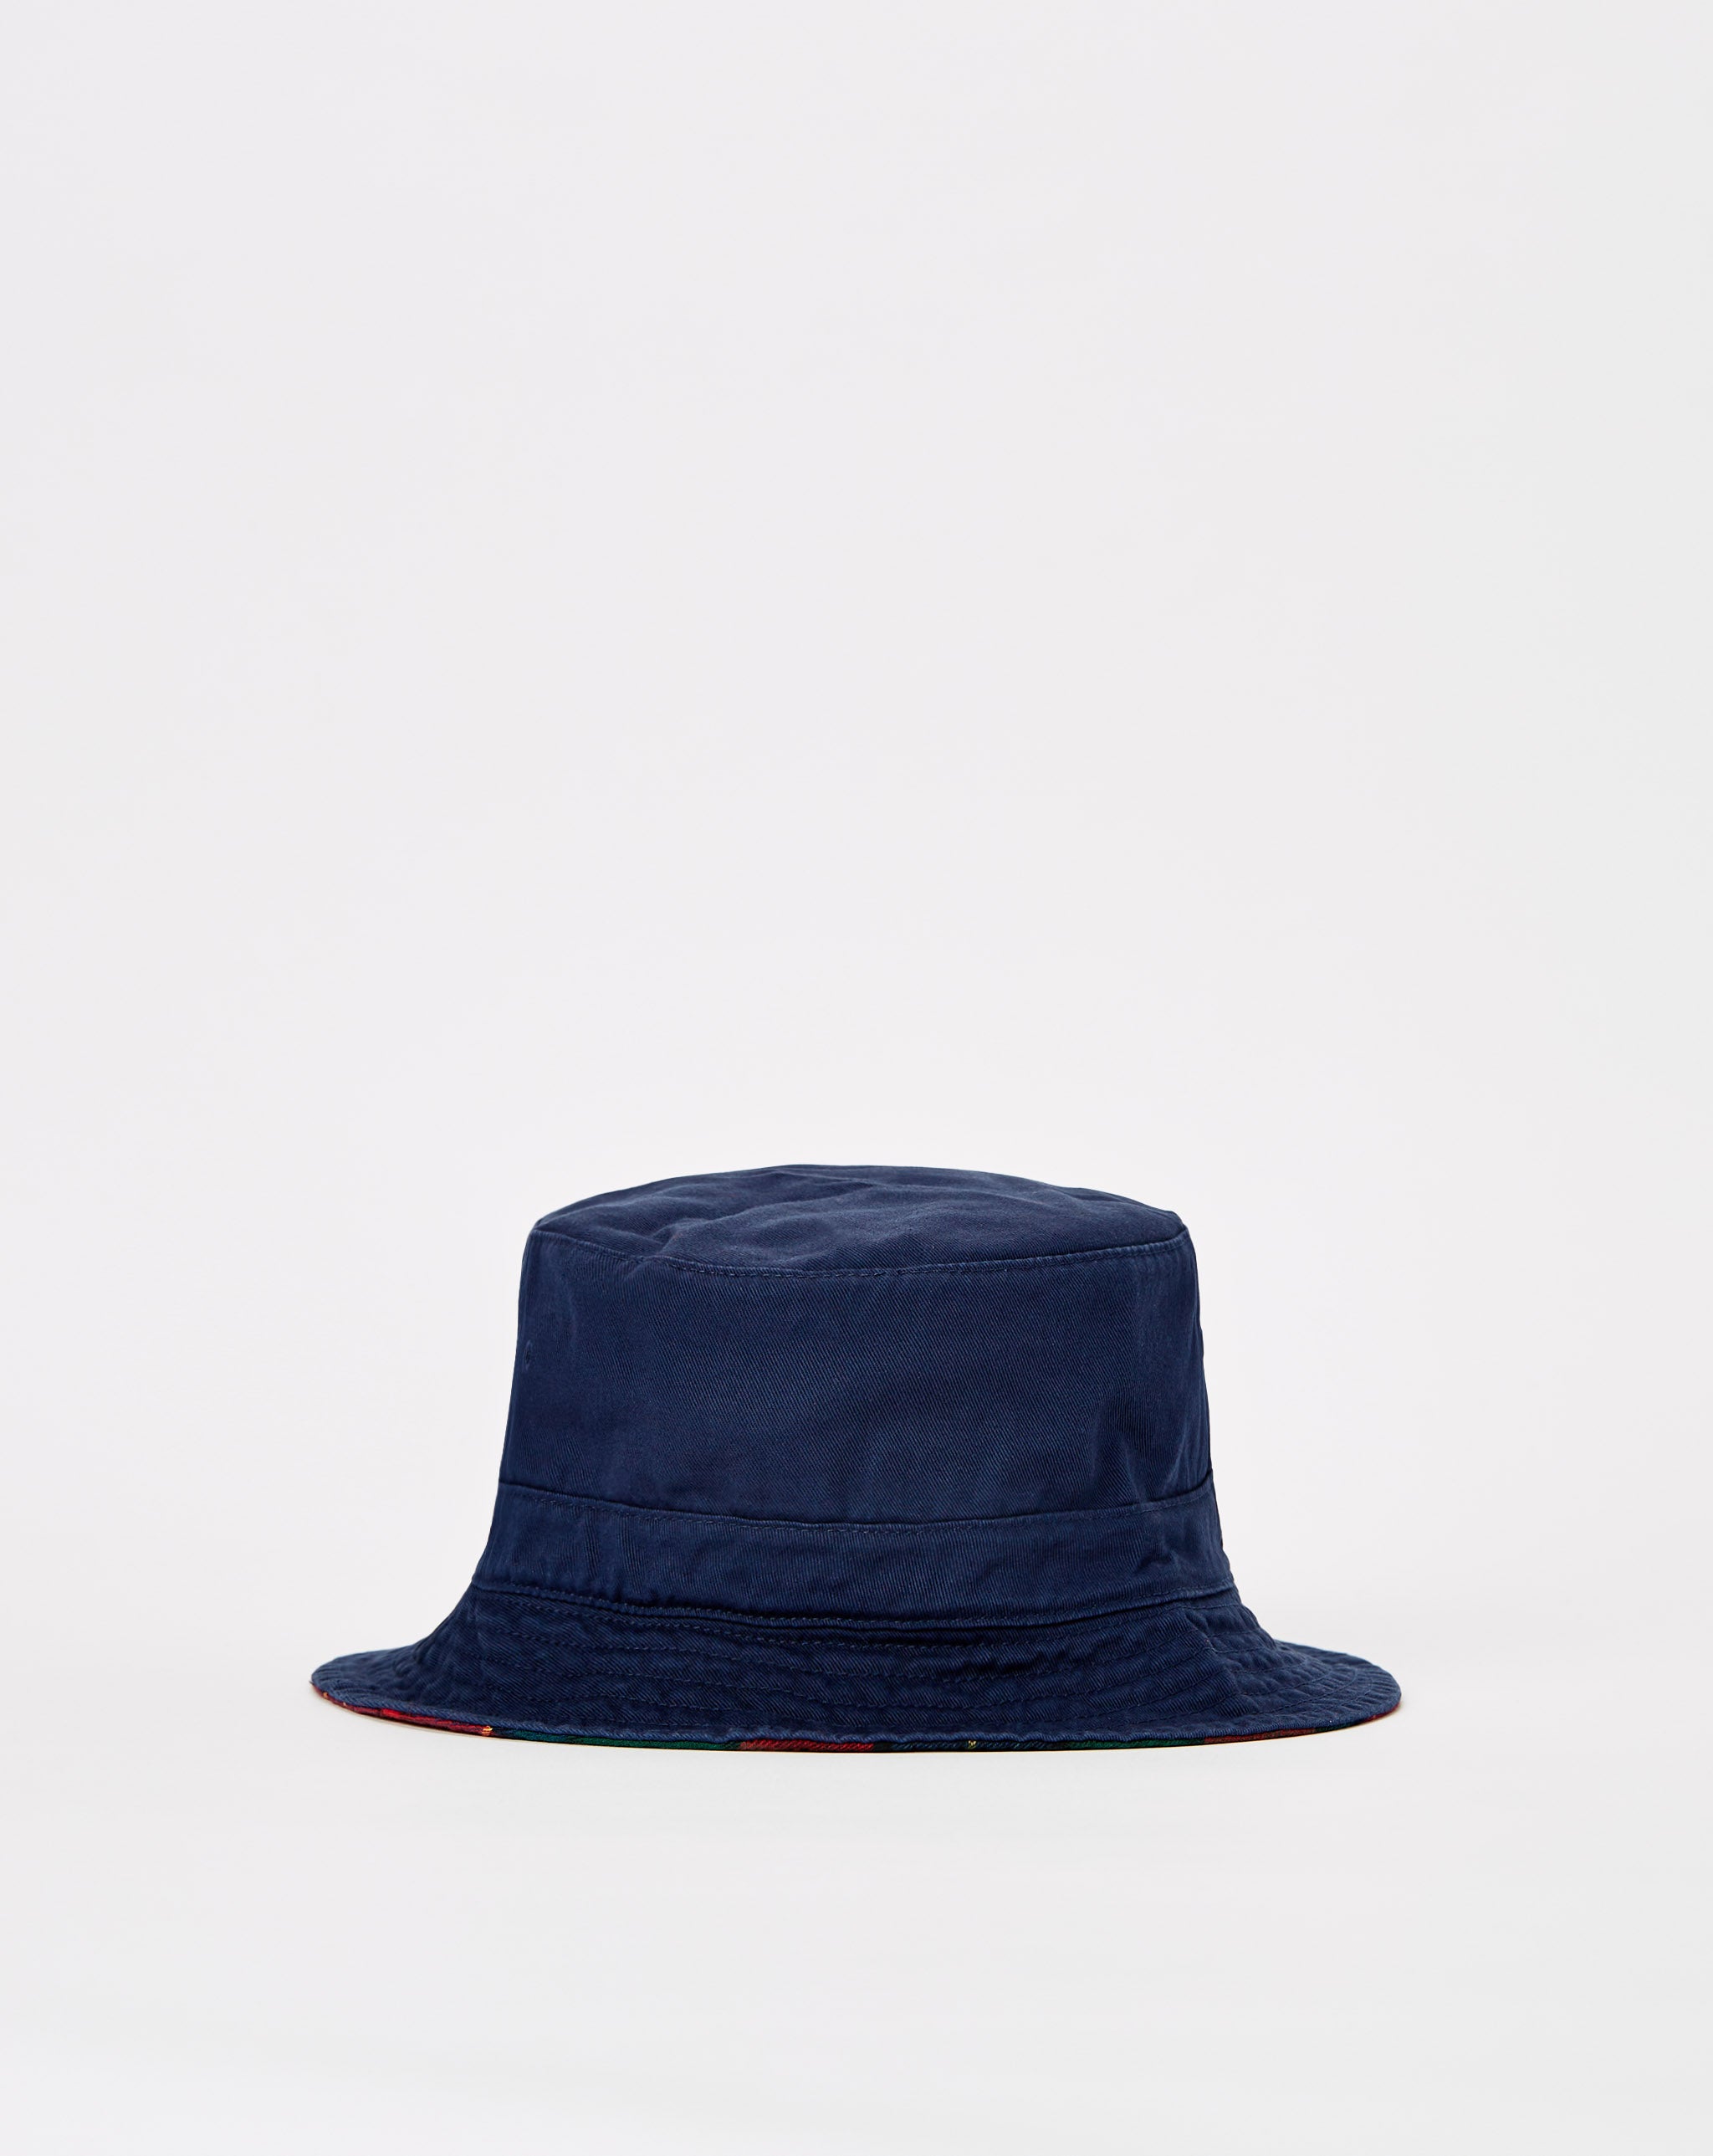 Polo Ralph Lauren Reversible Bucket Hat - Rule of Next Accessories